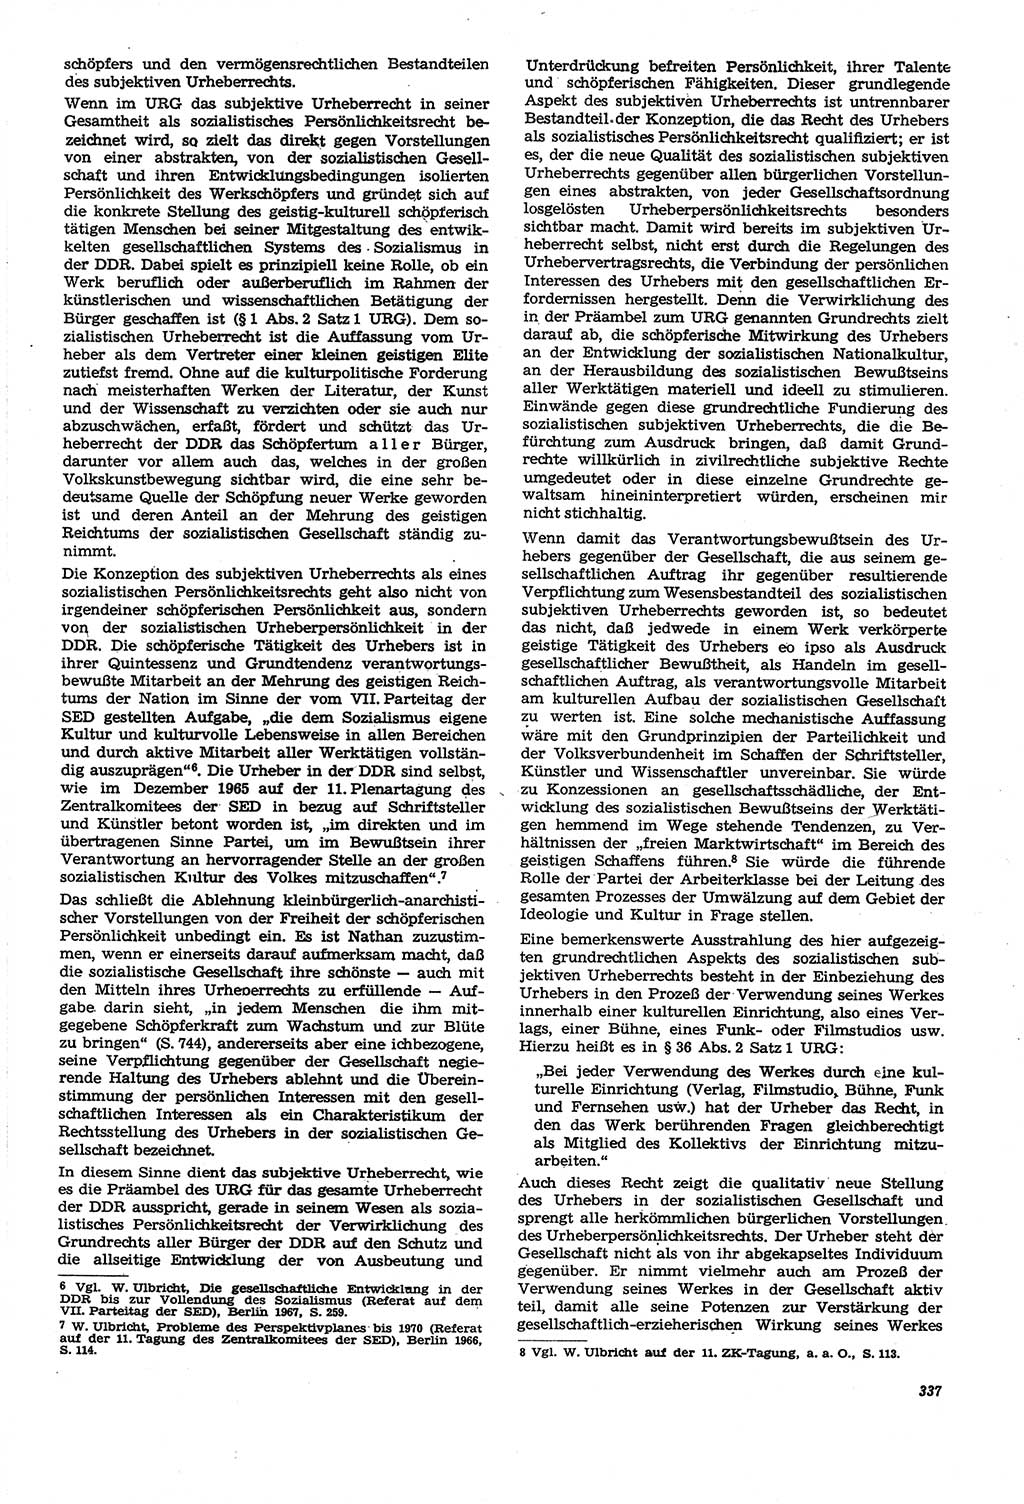 Neue Justiz (NJ), Zeitschrift für Recht und Rechtswissenschaft [Deutsche Demokratische Republik (DDR)], 21. Jahrgang 1967, Seite 337 (NJ DDR 1967, S. 337)